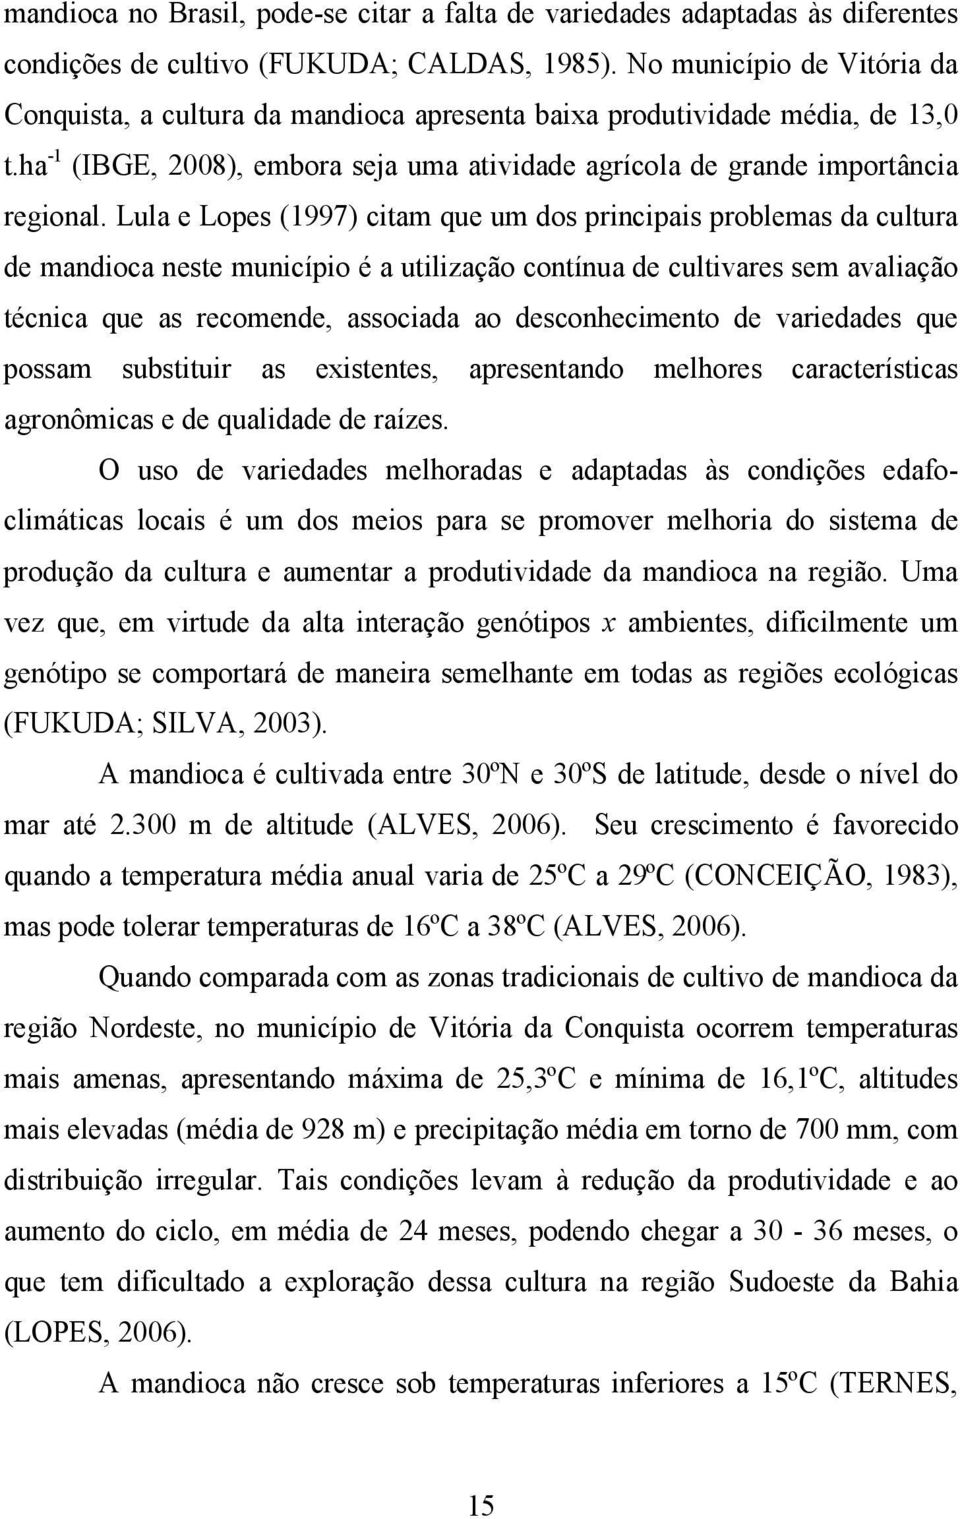 Lula e Lopes (1997) citam que um dos principais problemas da cultura de mandioca neste município é a utilização contínua de cultivares sem avaliação técnica que as recomende, associada ao